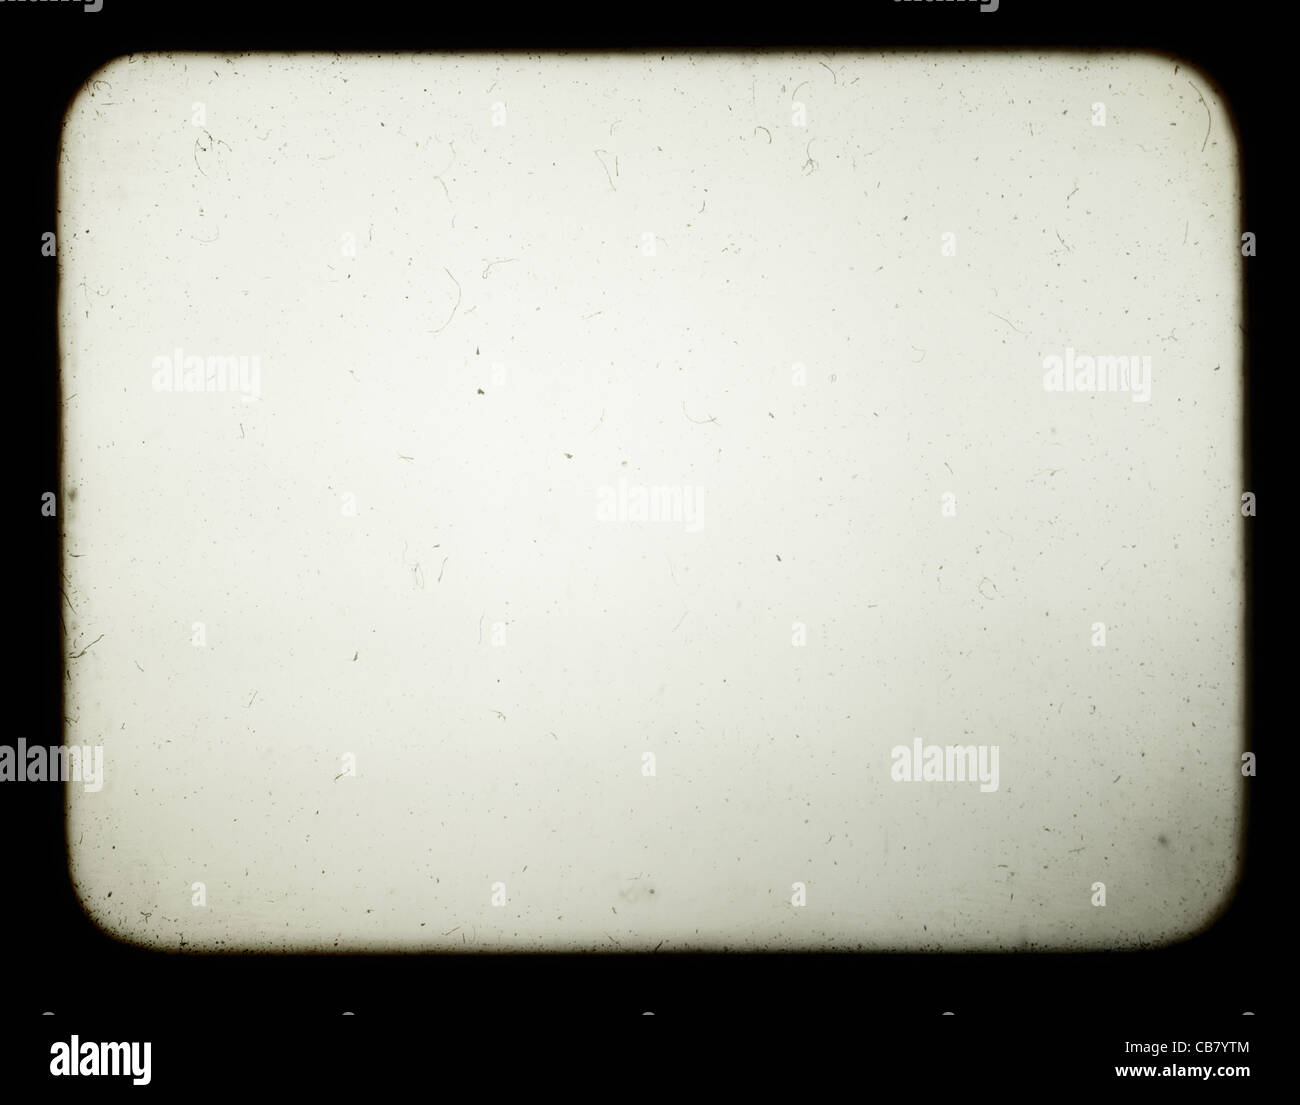 Diapositiva antigua fotografías e imágenes de alta resolución - Alamy